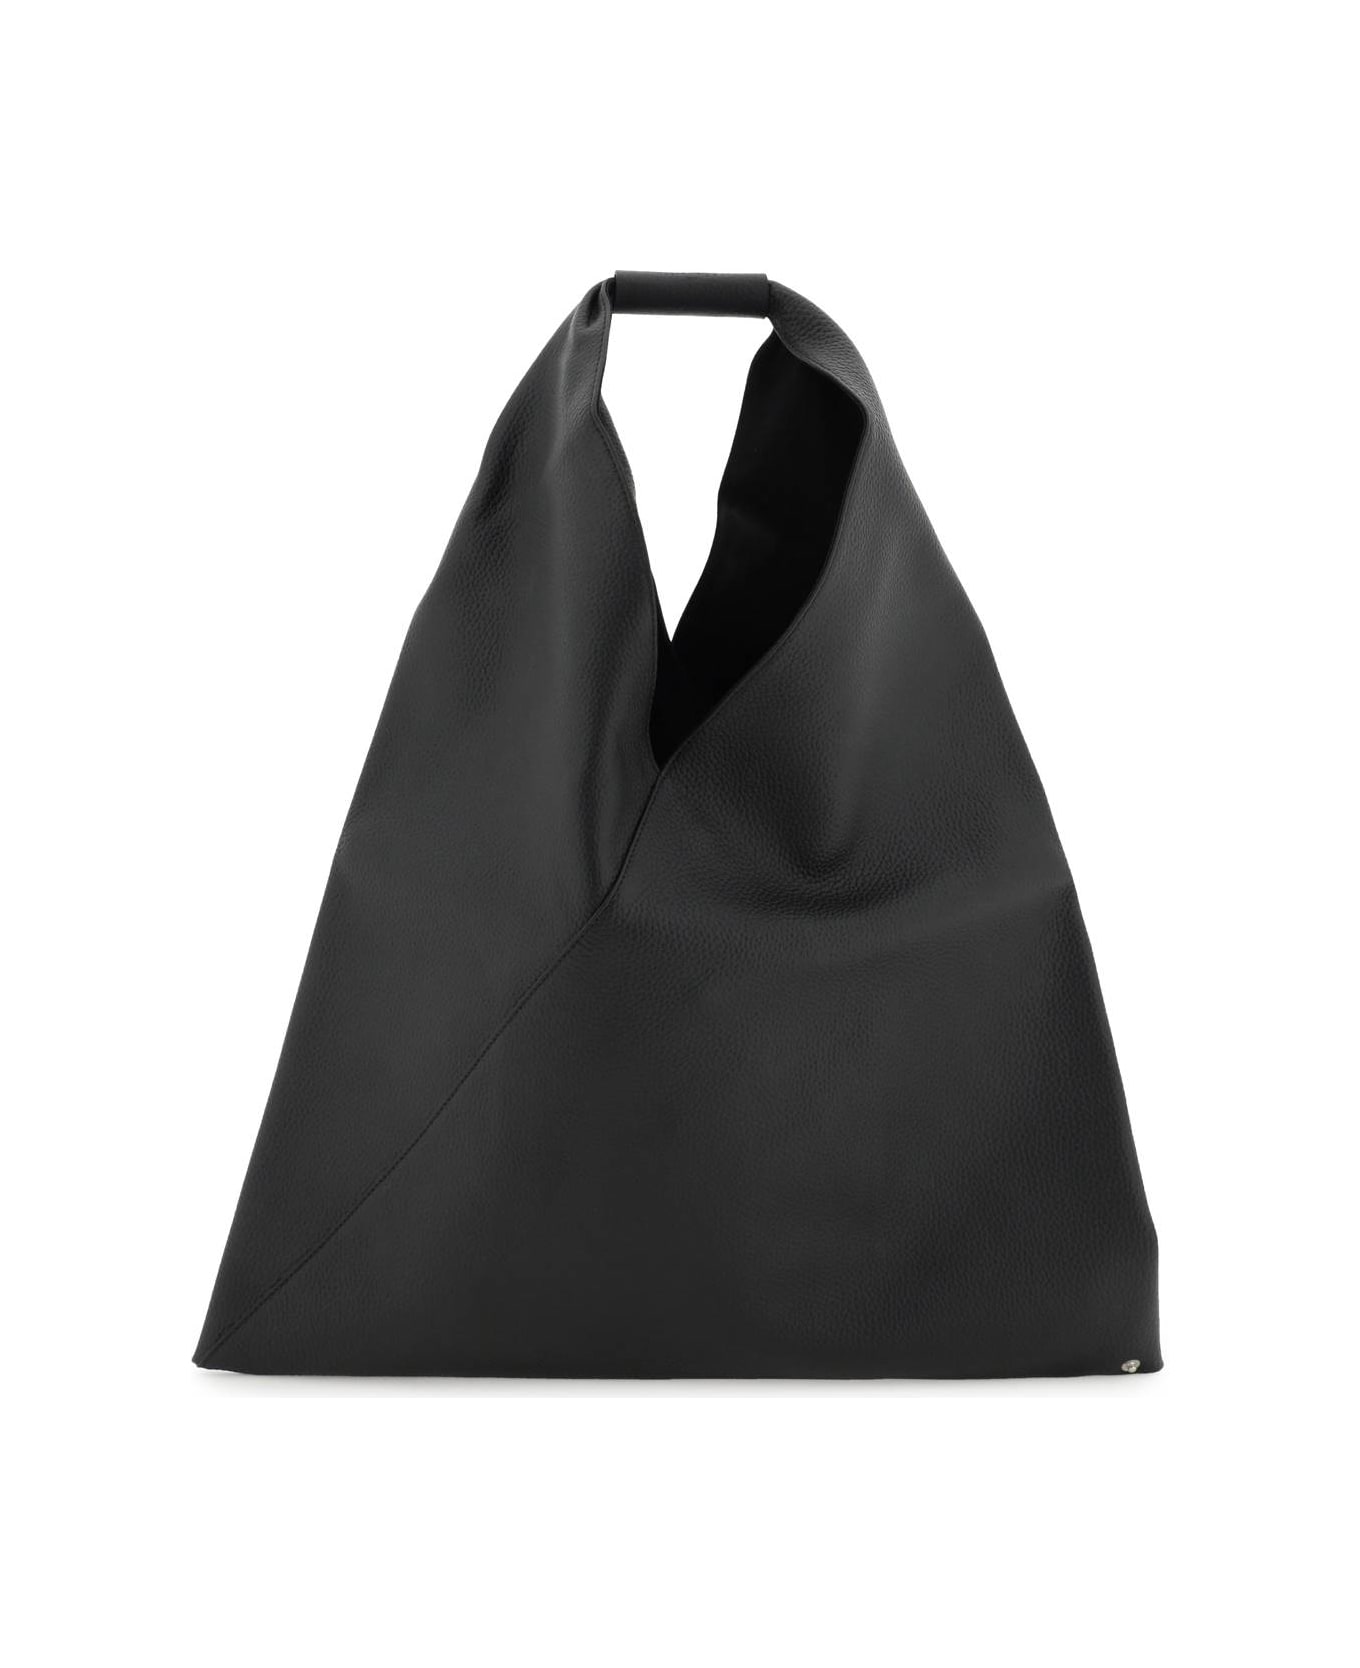 MM6 Maison Margiela Japanese Bag Handbag - Black